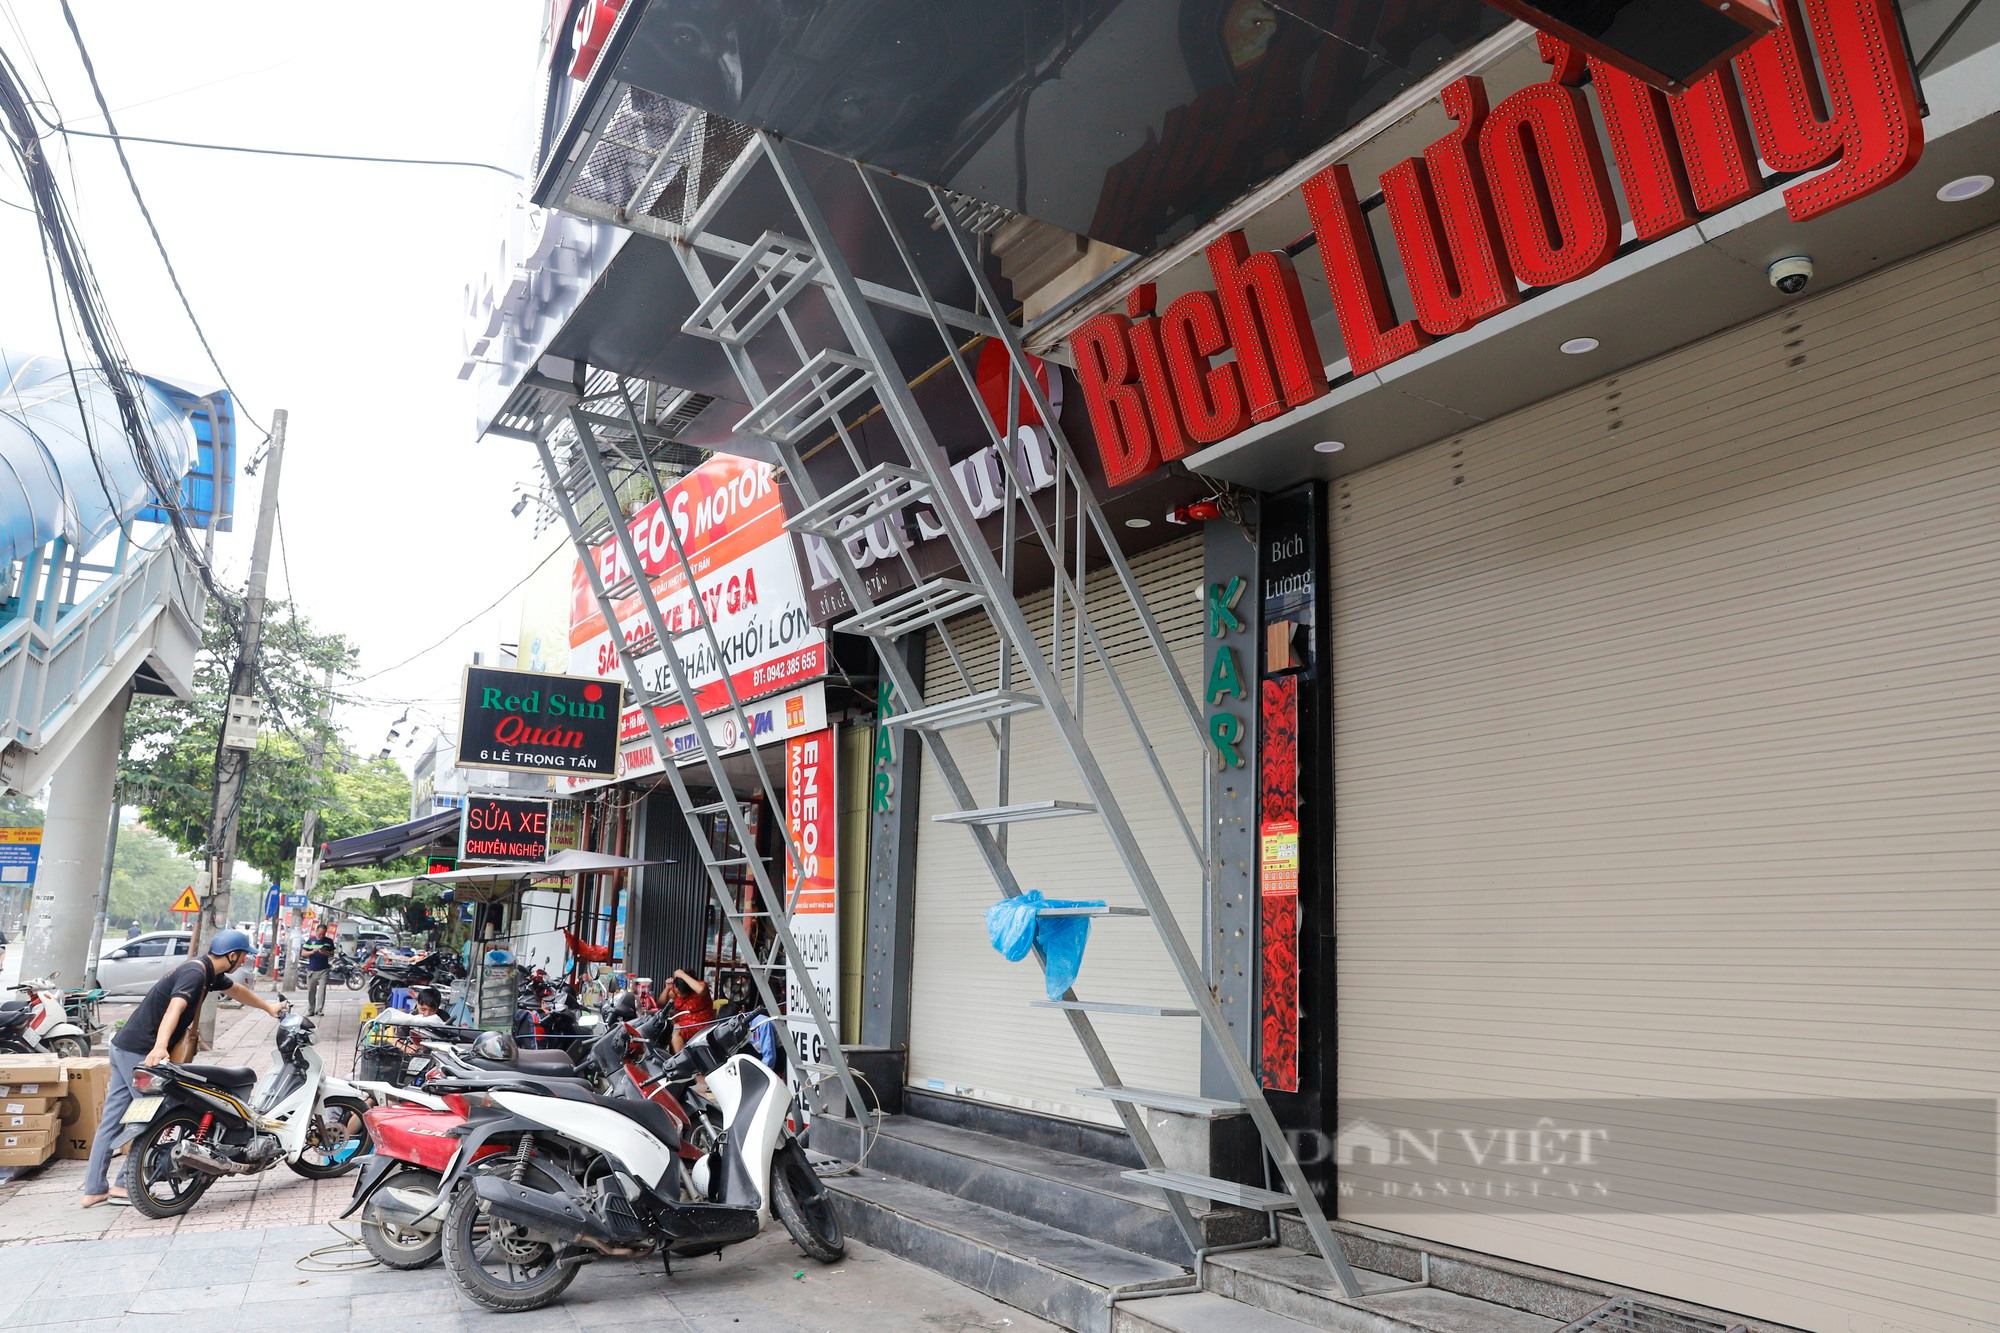 Chung cư mini, khách sạn tại Hà Nội lắp thang thoát hiểm hàng trăm triệu đồng - Ảnh 2.